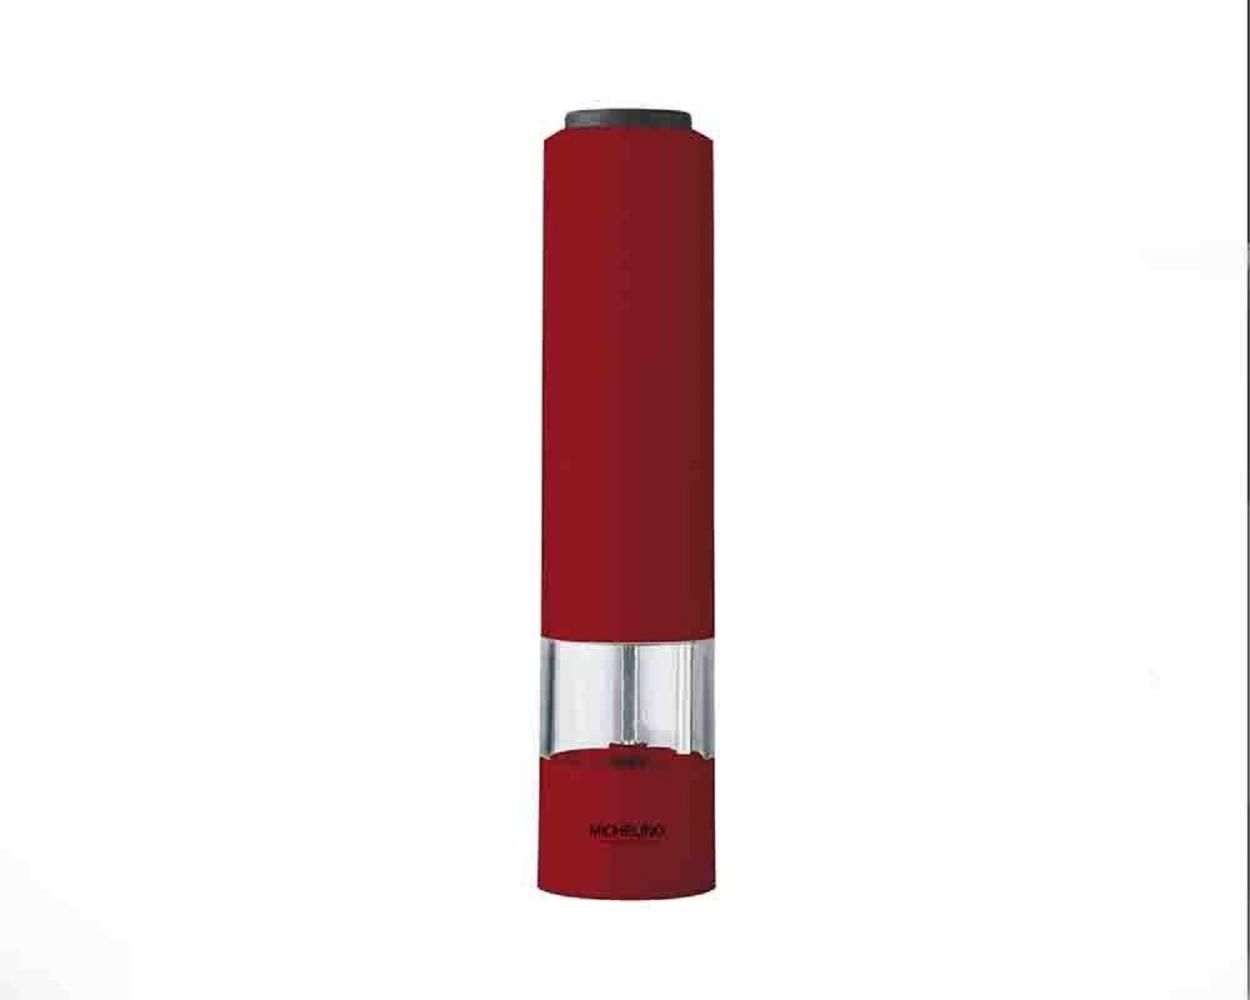 Michelino Elektrische Gewürzmühle Salz-/Pfeffermühle Grob- und Feinjustierung Rot Bild 1